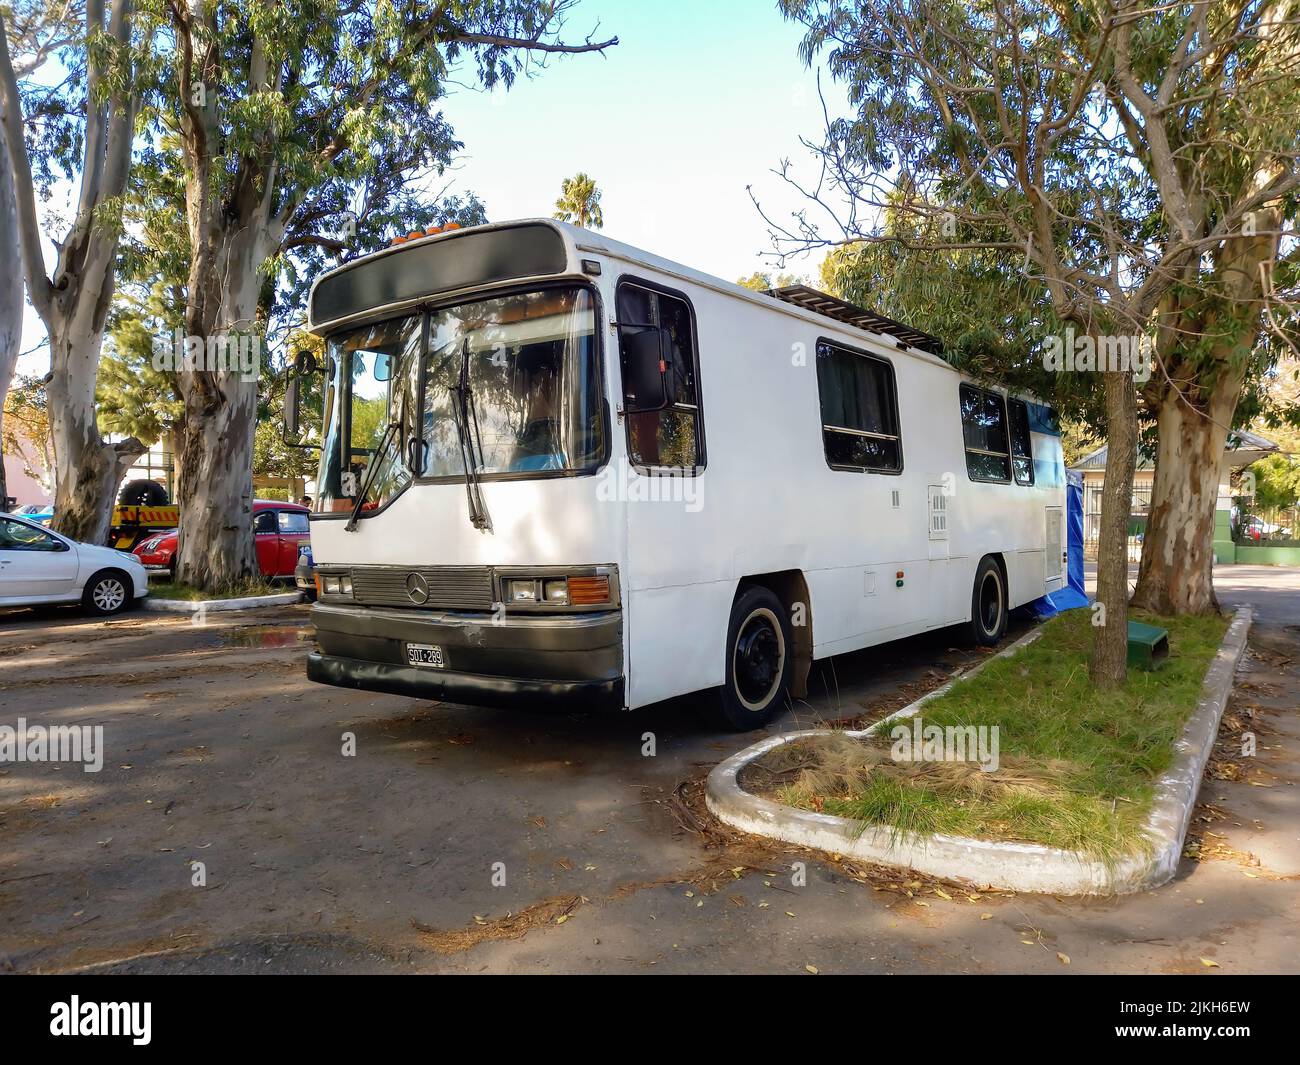 Quilmes, Argentina - 29 maggio 2022: Vecchio camper bianco Mercedes Benz in un parco. Natura, alberi. Spettacolo di auto classica. CopySpace Foto Stock